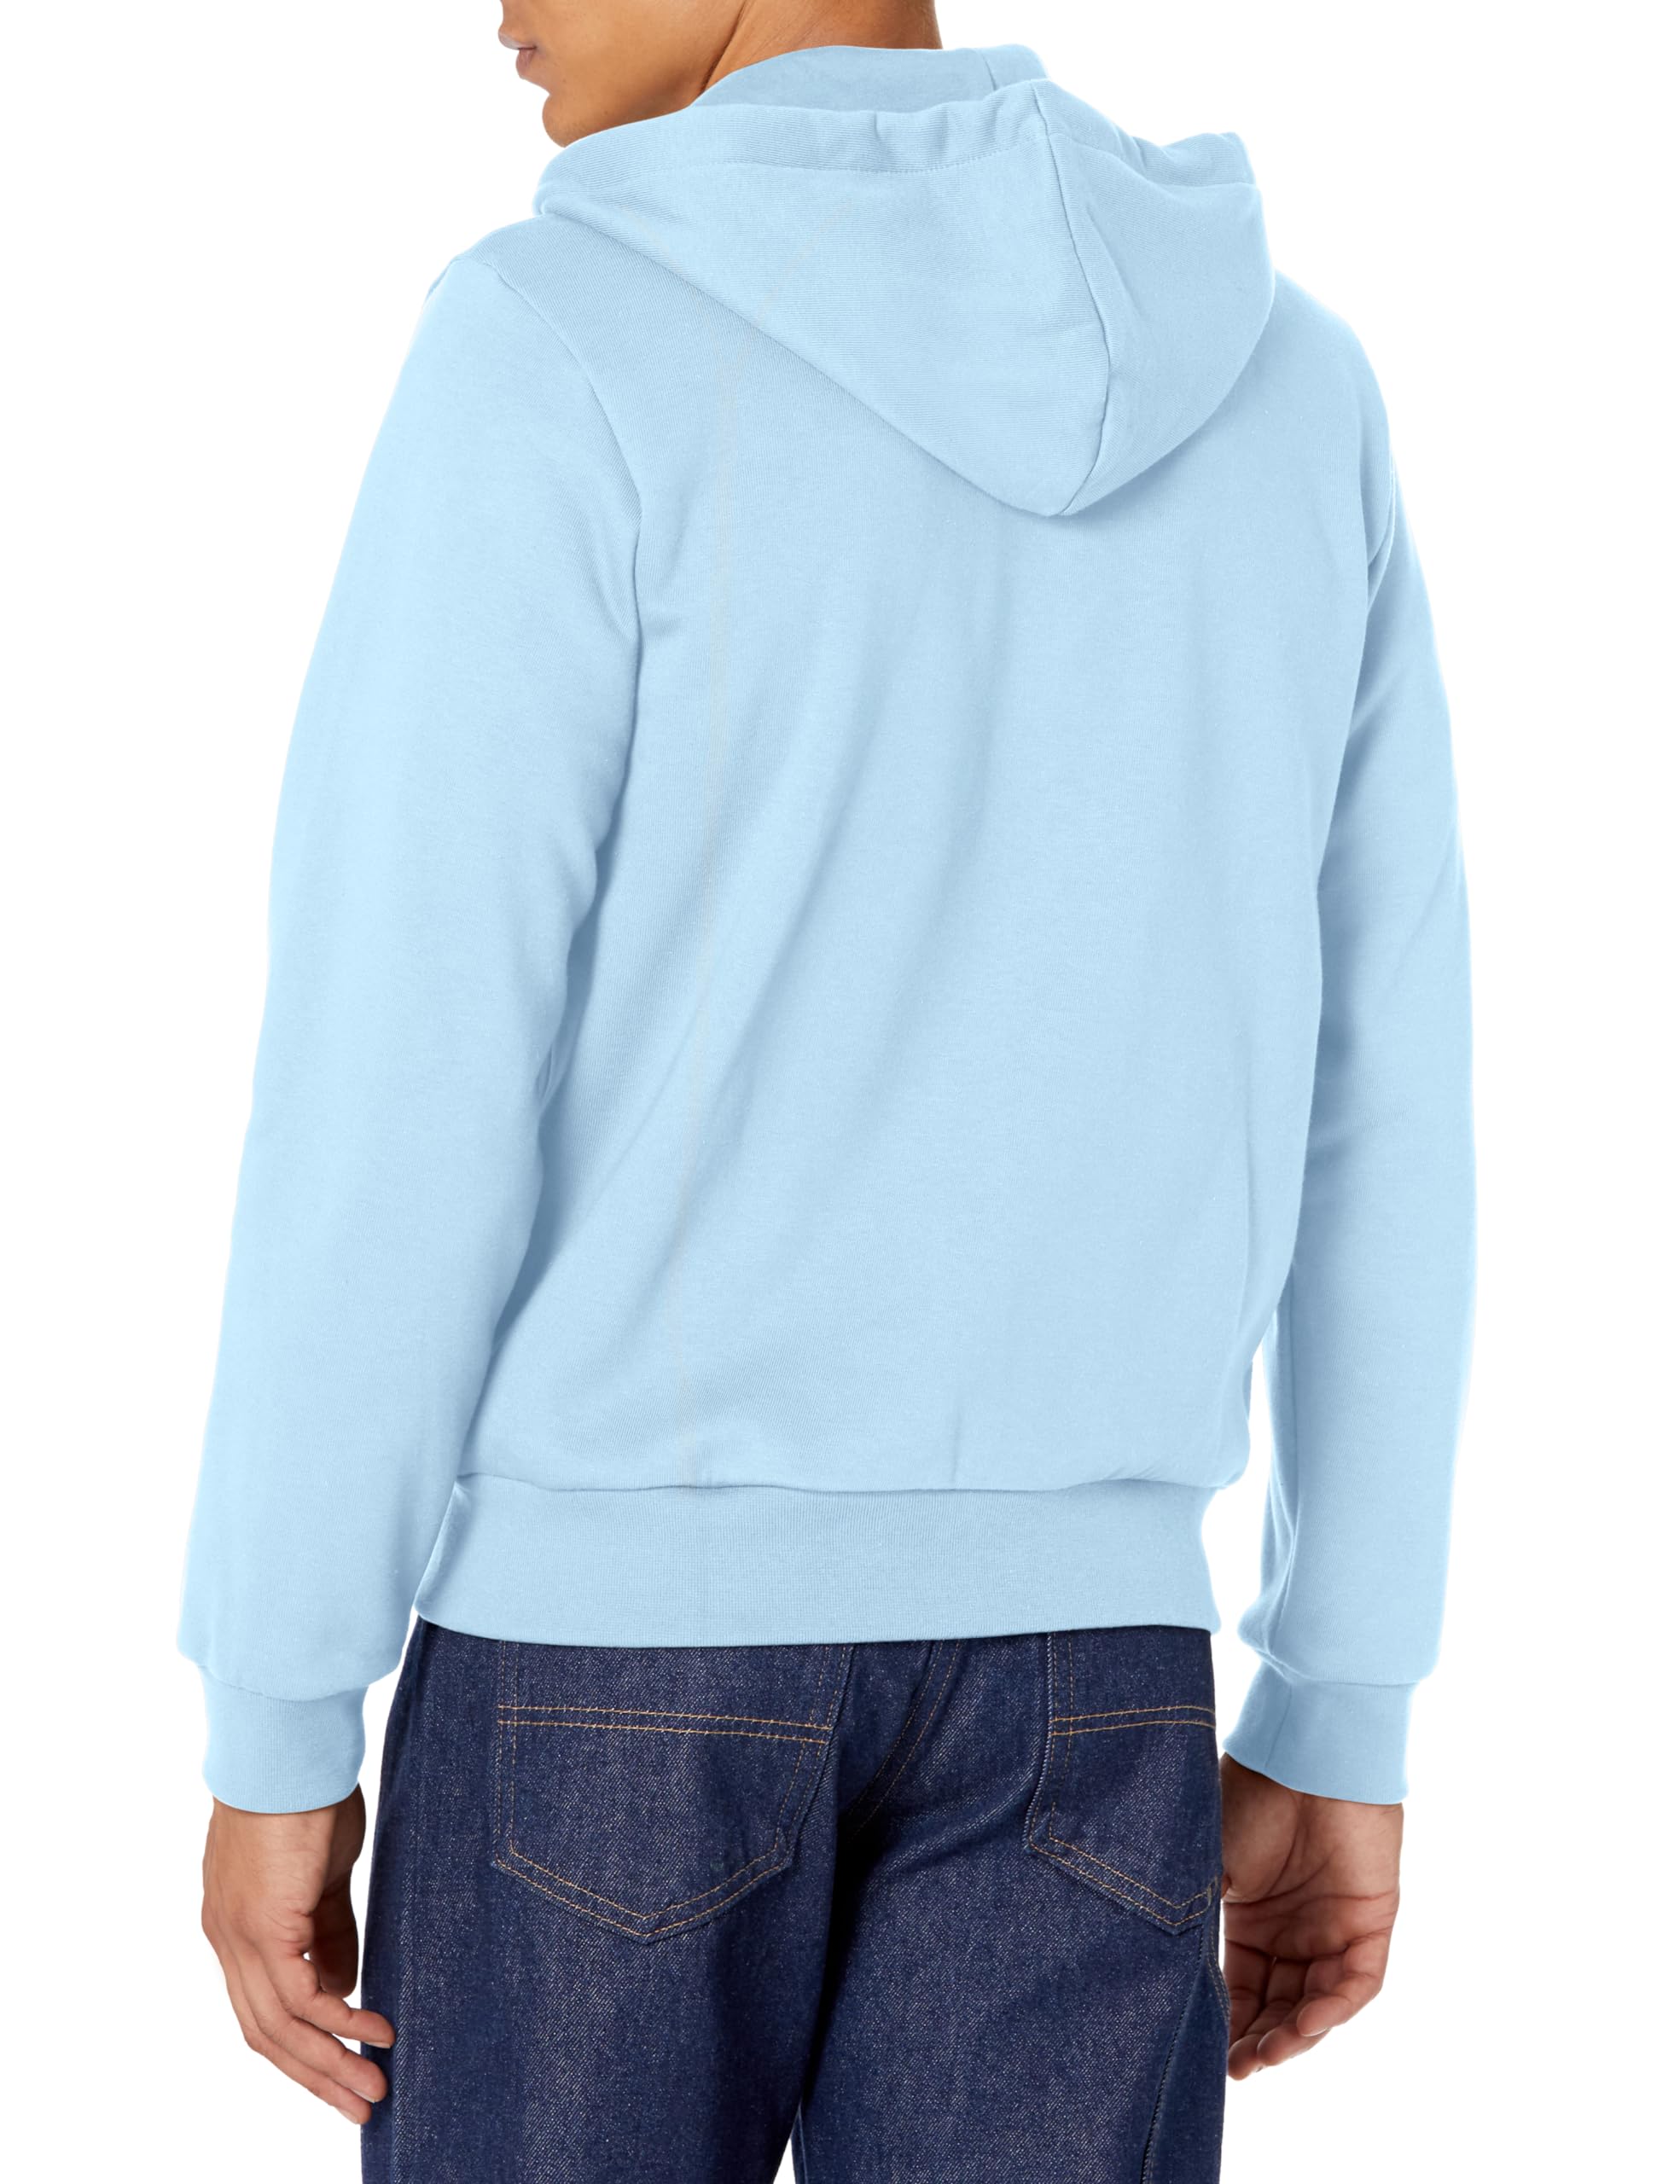 Lacoste Men's Long Sleeve Full Zip Sweater